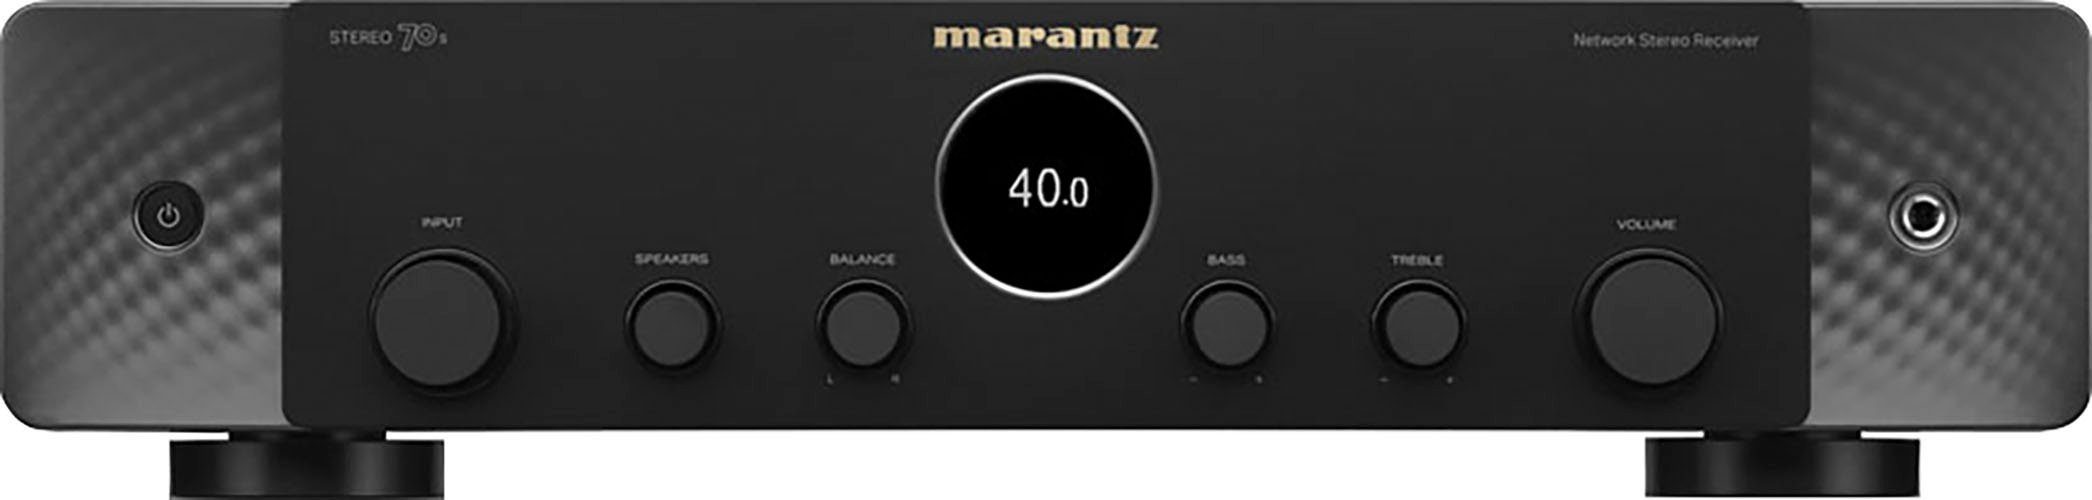 (Ethernet), schwarz 2.1 Stereo LAN Marantz WLAN) 70S AV-Receiver (Bluetooth,